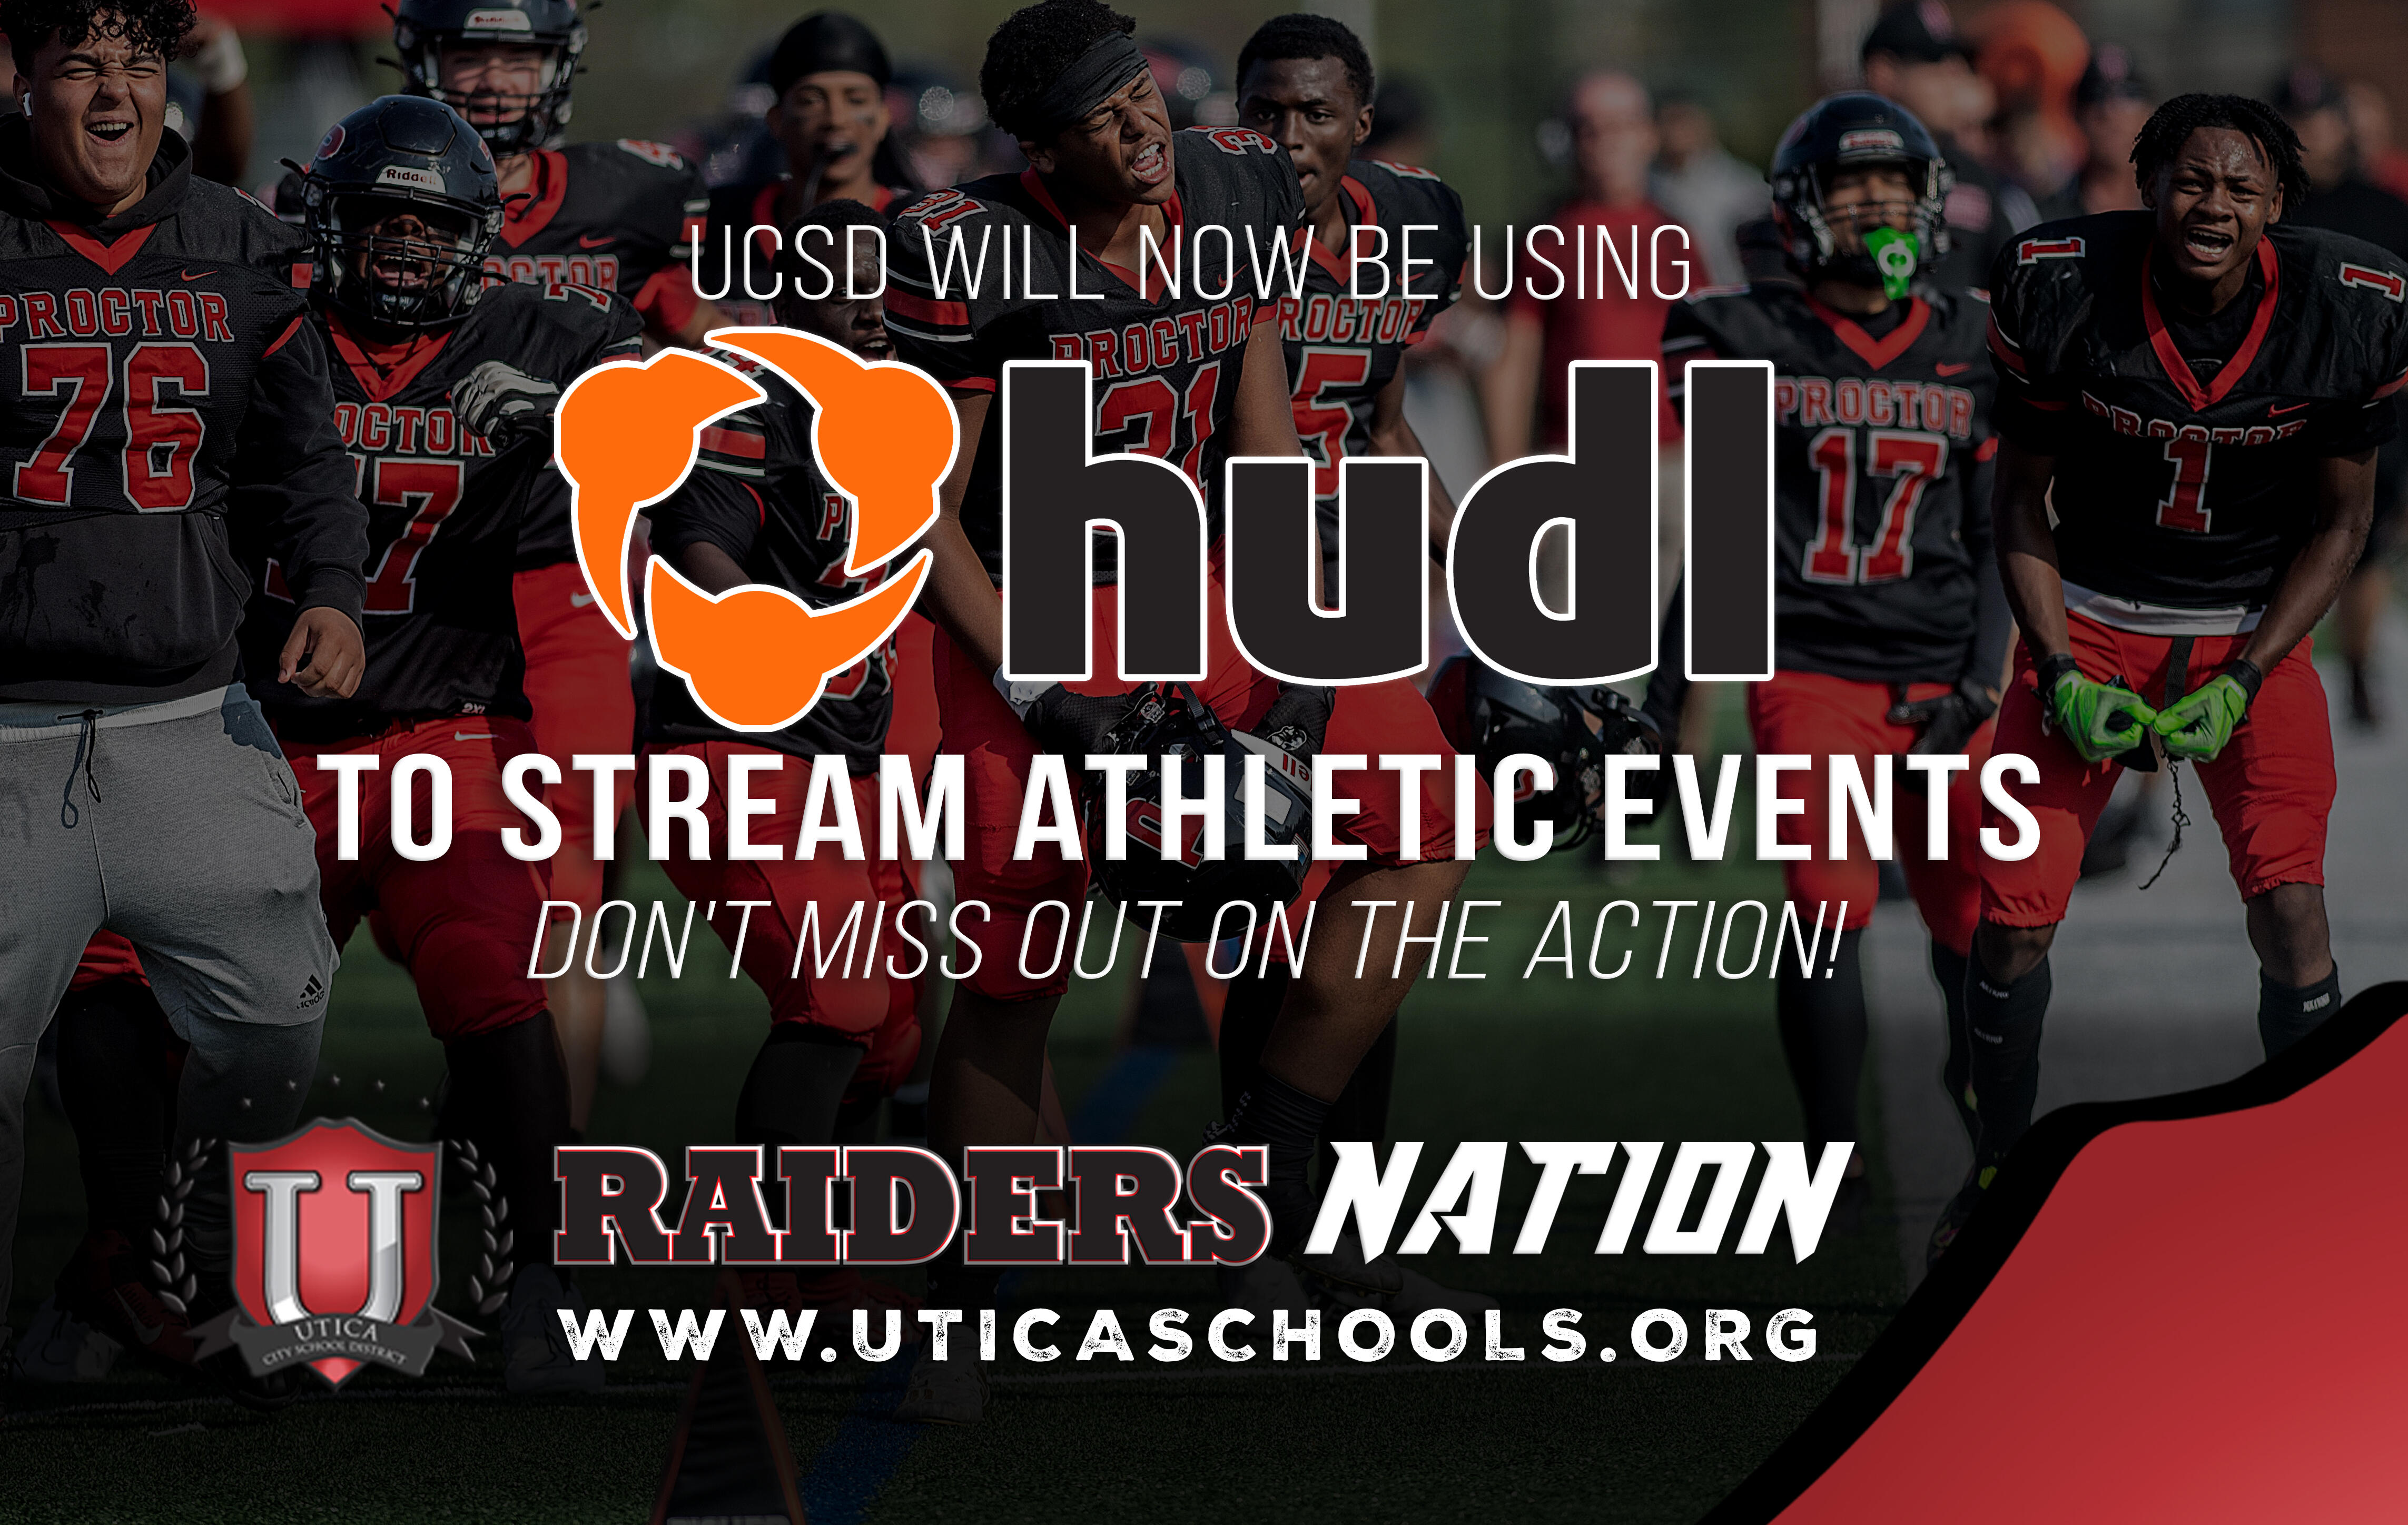 UCSD در حال حاضر از تلویزیون HUDL برای پخش رویدادهای ورزشی استفاده می کند. از دست ندهید در عمل!